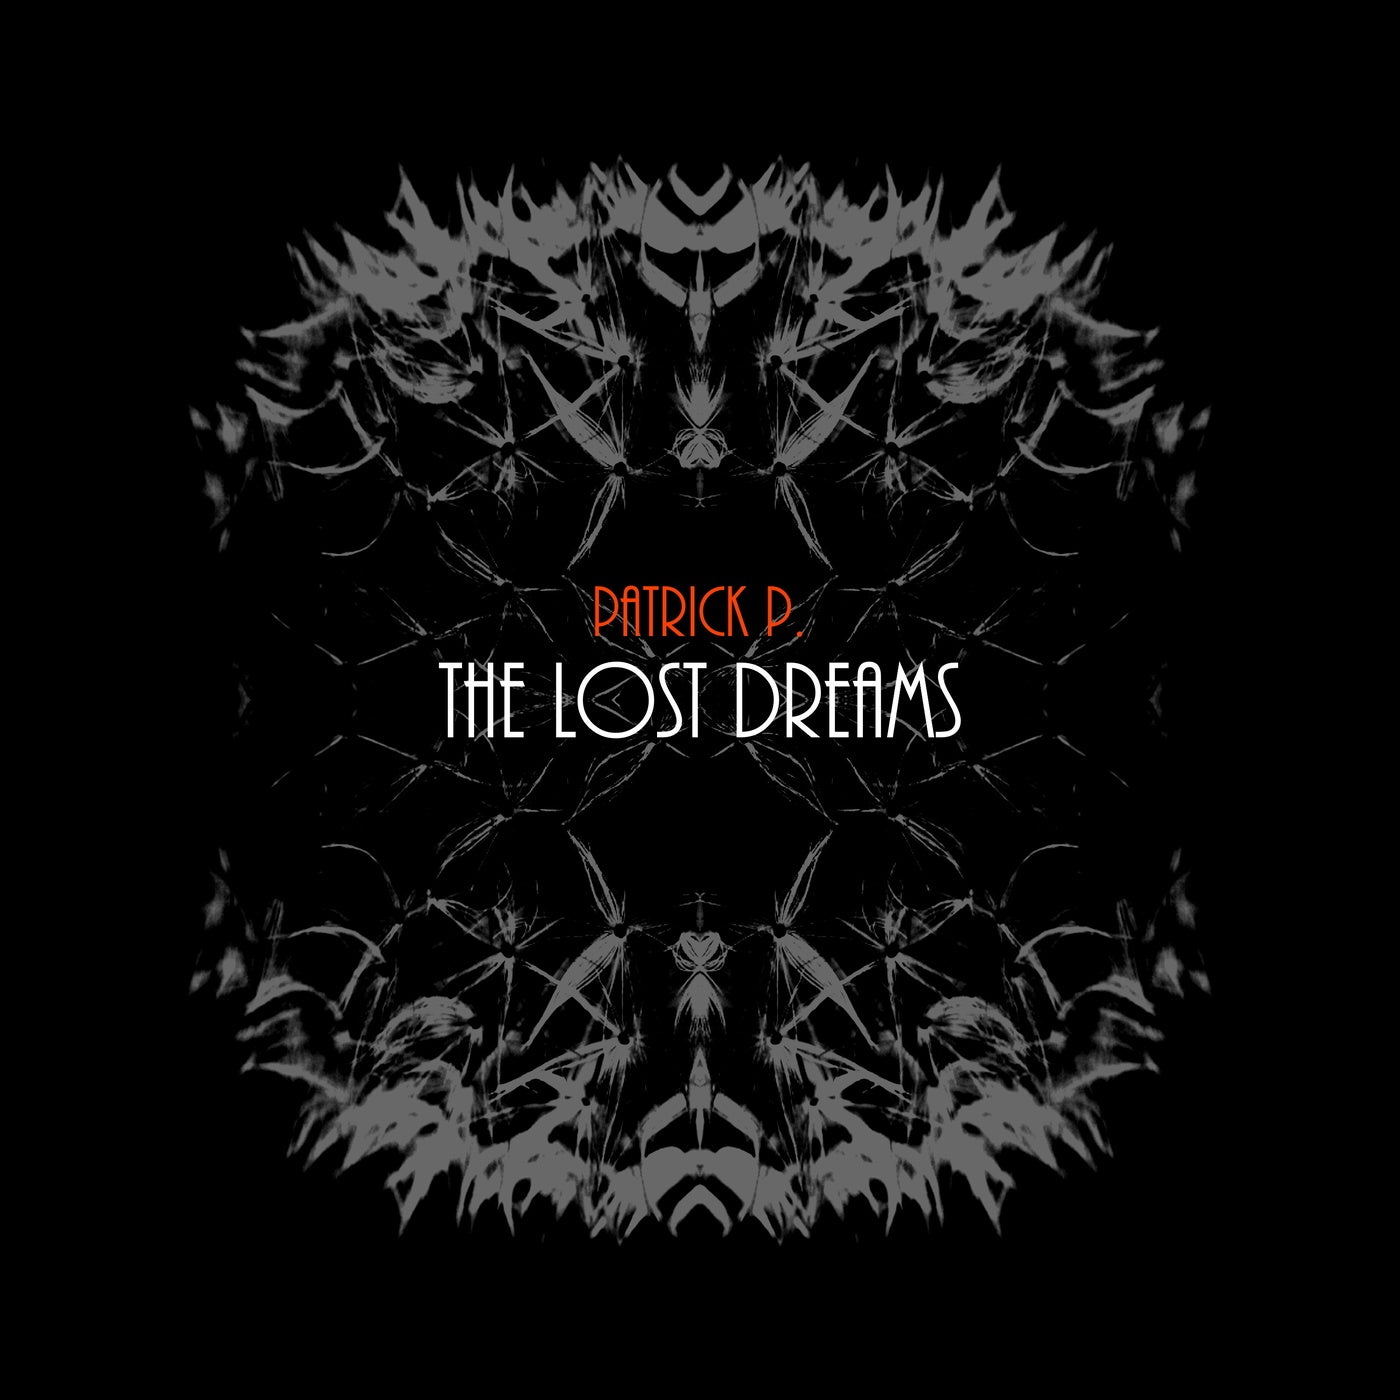 The Lost Dreams